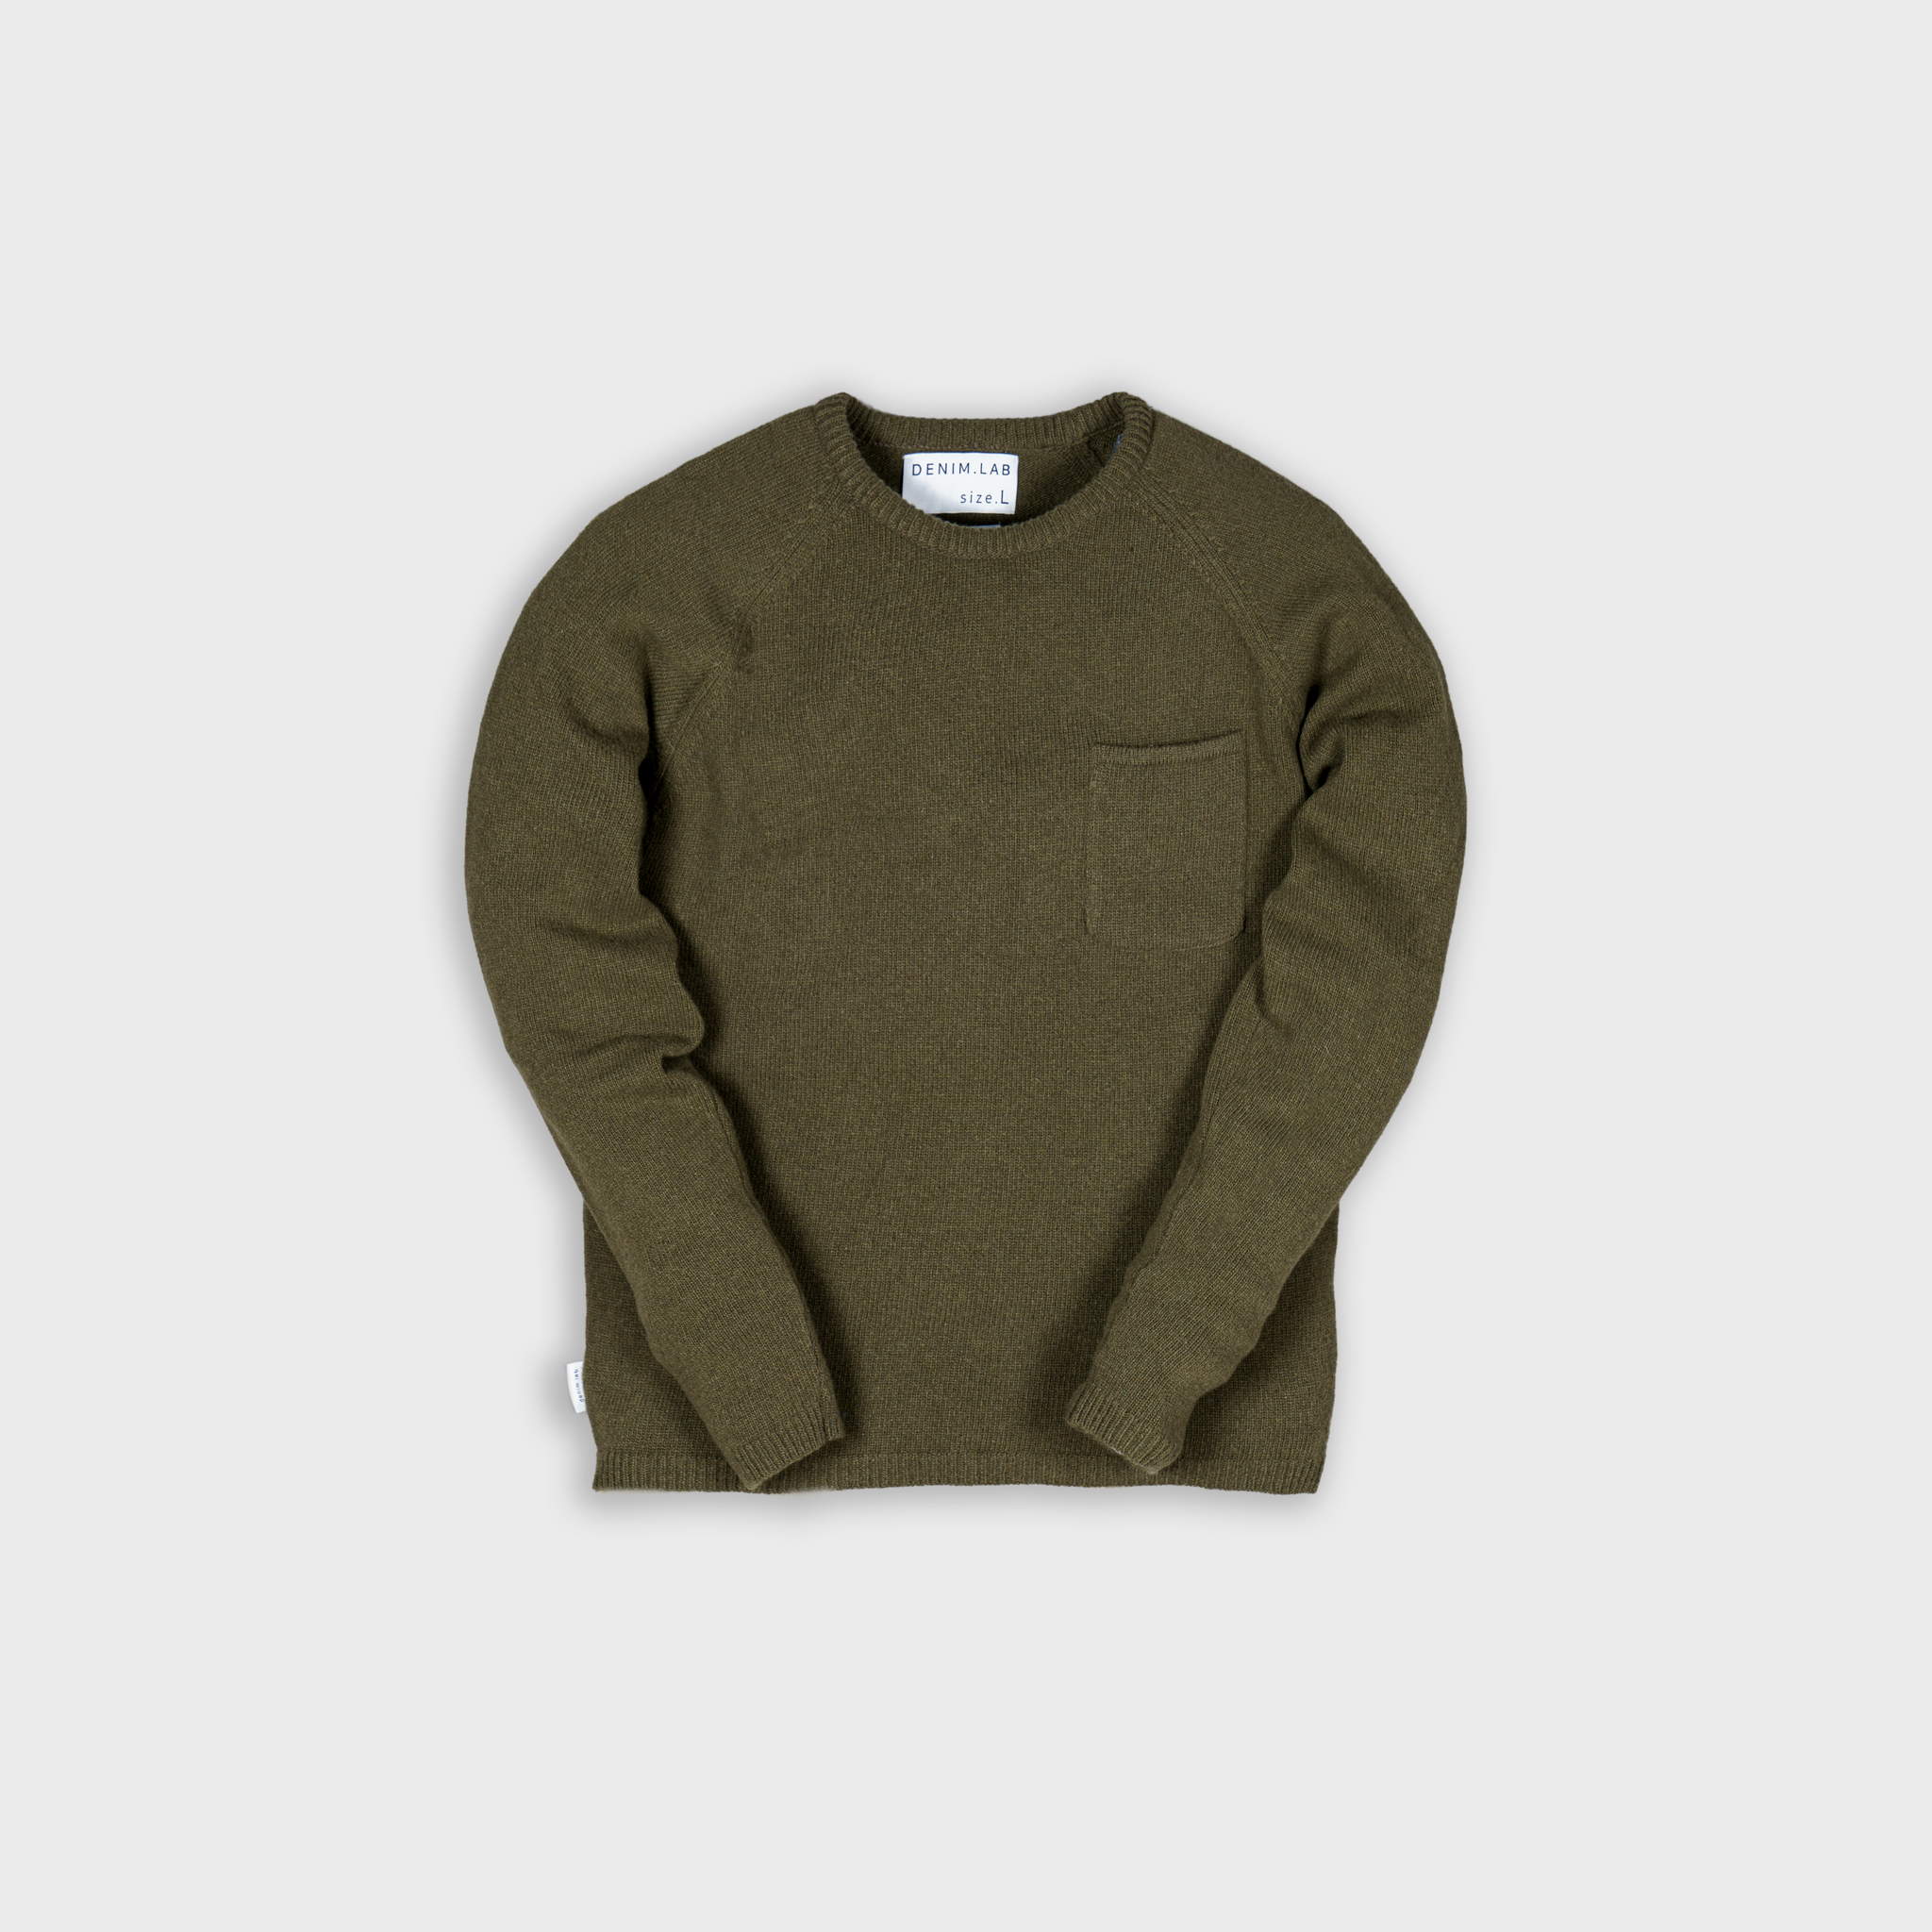 frame knit - army green - 7g - 100% Italian wool